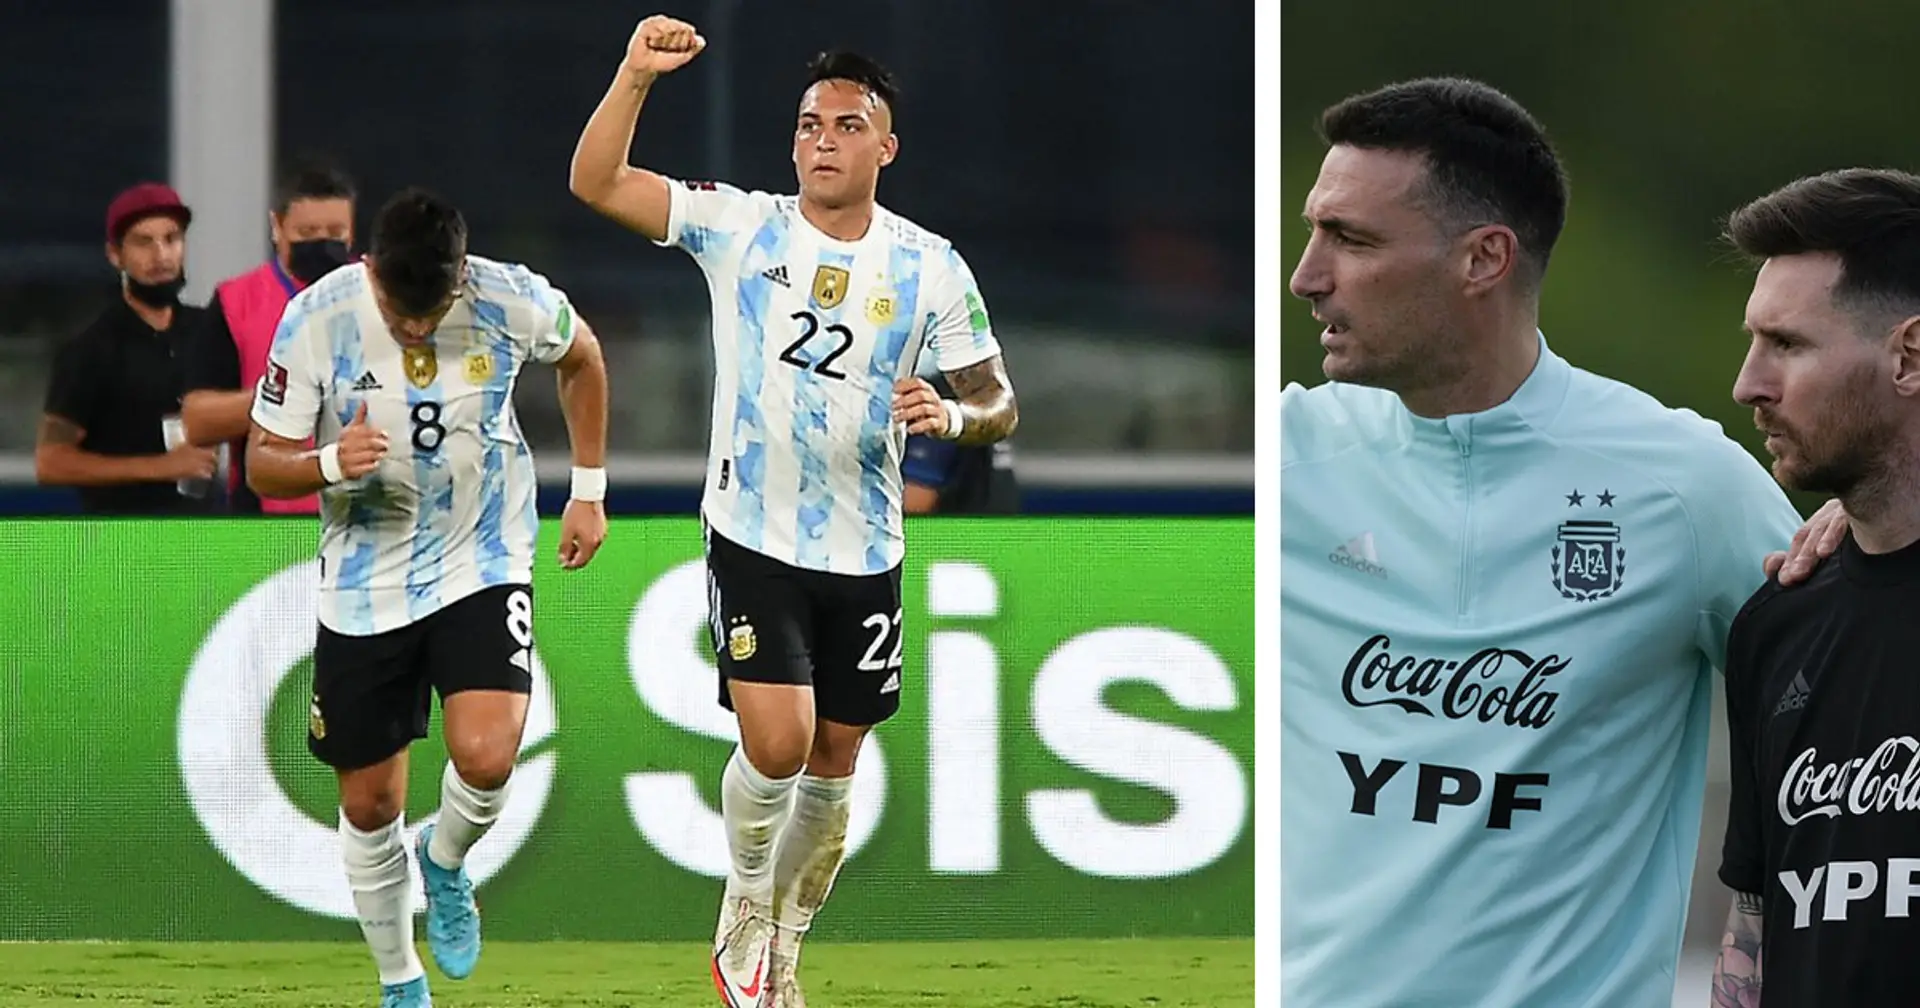 Messi + Scaloni = unschlagbar: Argentinien mit einem neuen Rekord nach 29 Spielen ohne Niederlage